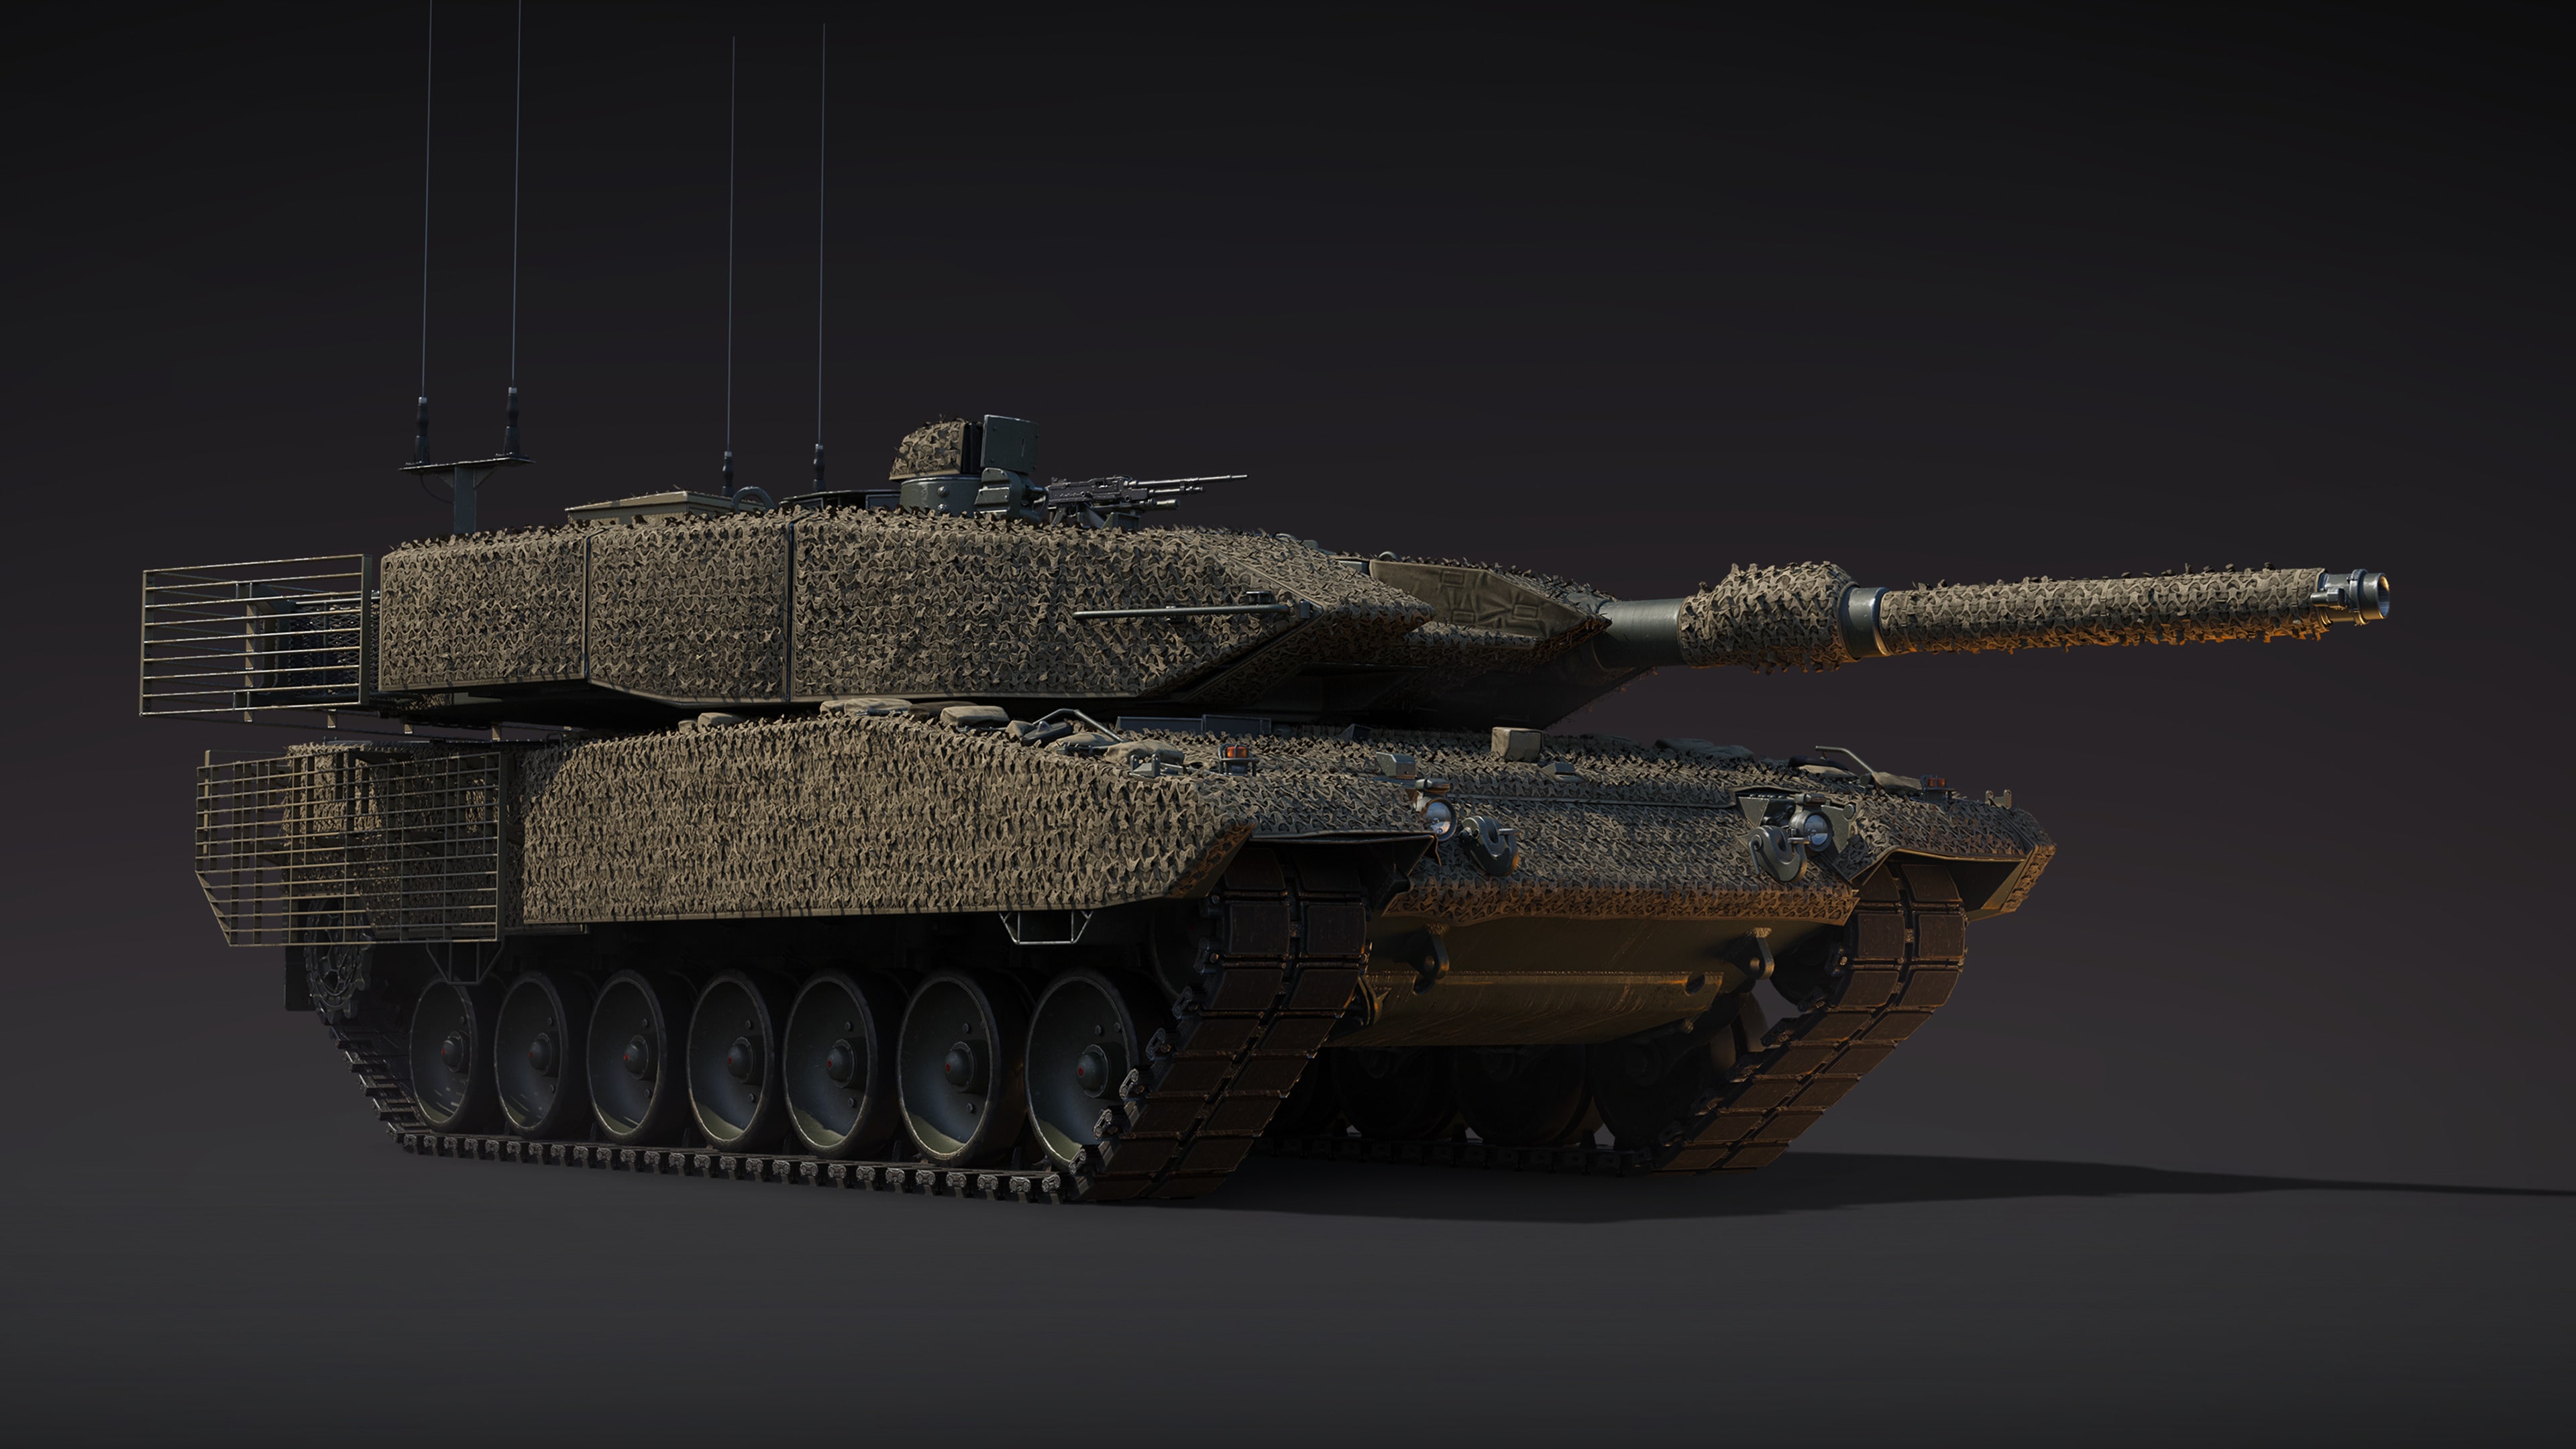 War Thunder - Leopard 2A4M CAN Bundle